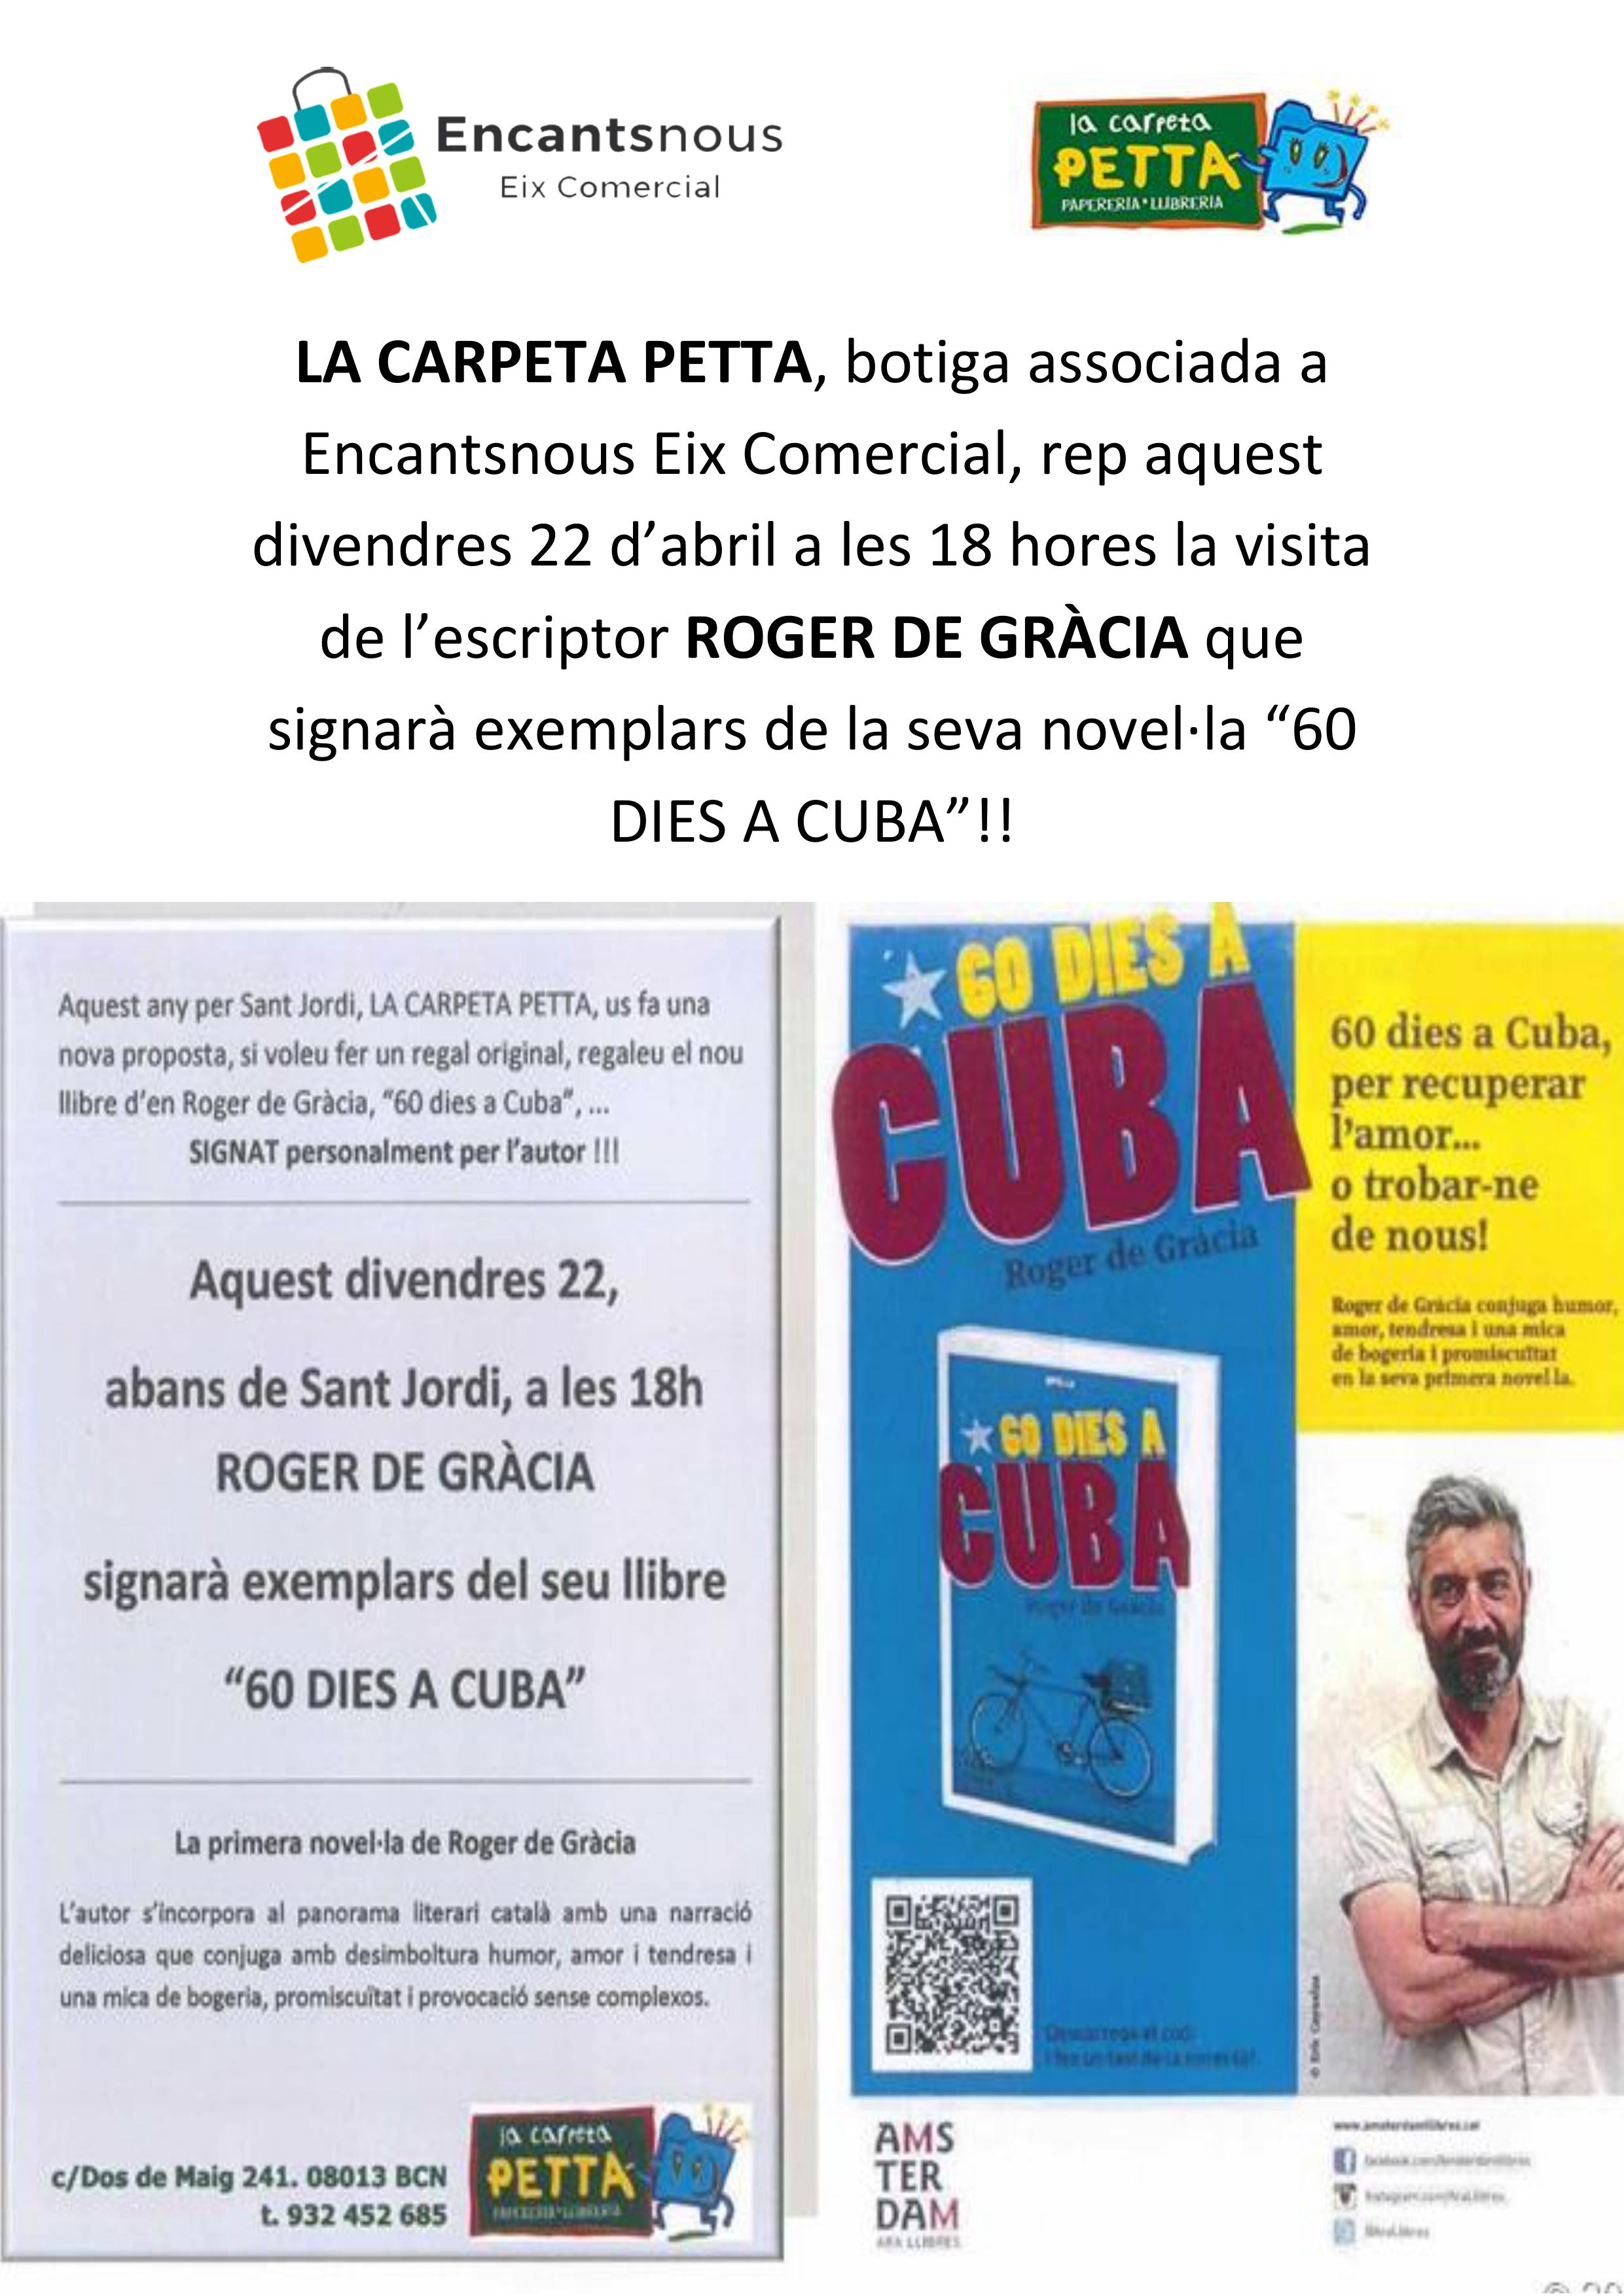 La Carpeta Petta rep el pròxim divendres 22 d'abril la visita de l'escriptor Roger de Gràcia